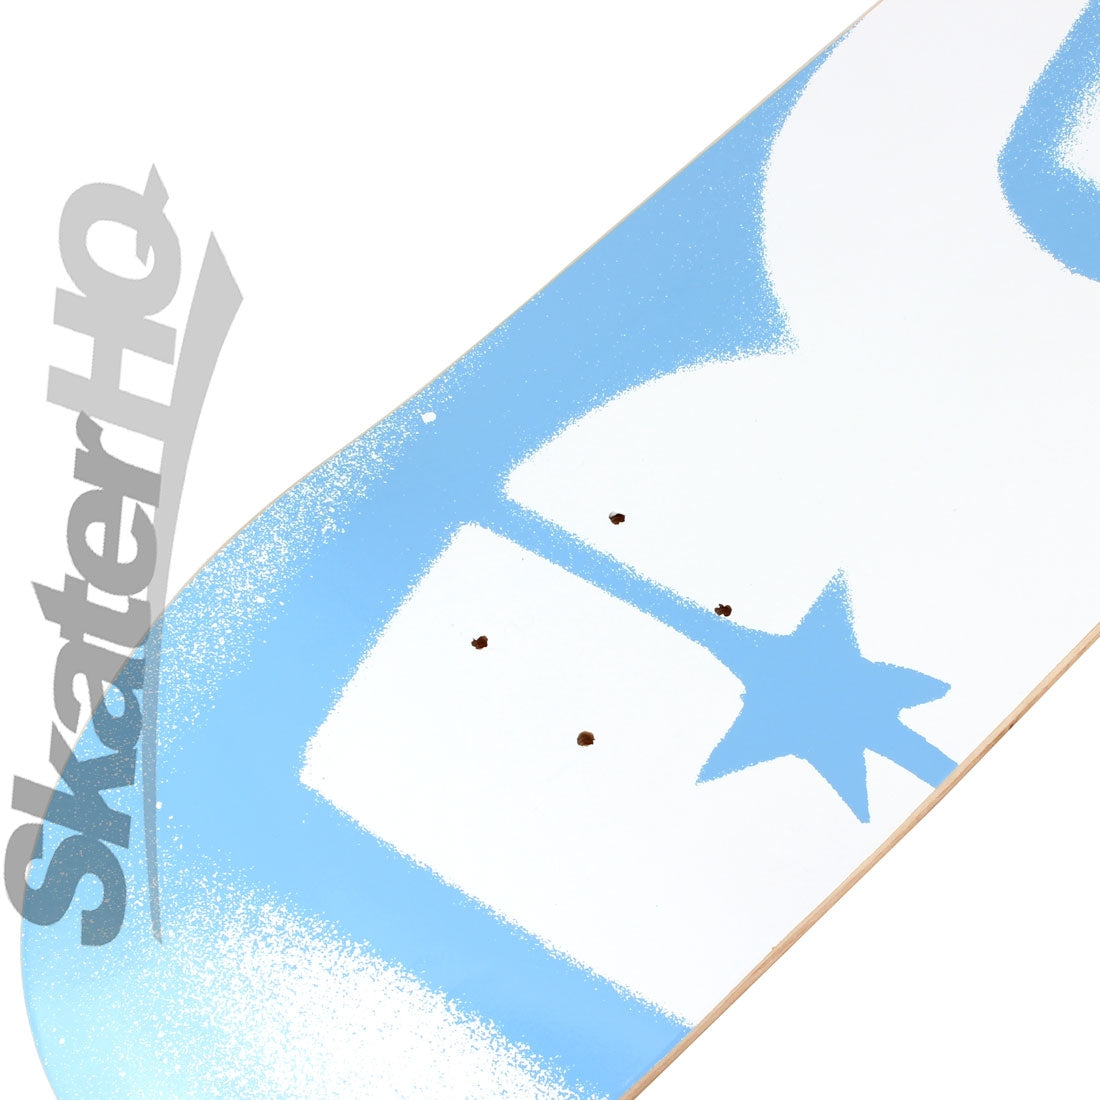 DGK Stencil PP 7.75 Blue Deck Skateboard Decks Modern Street